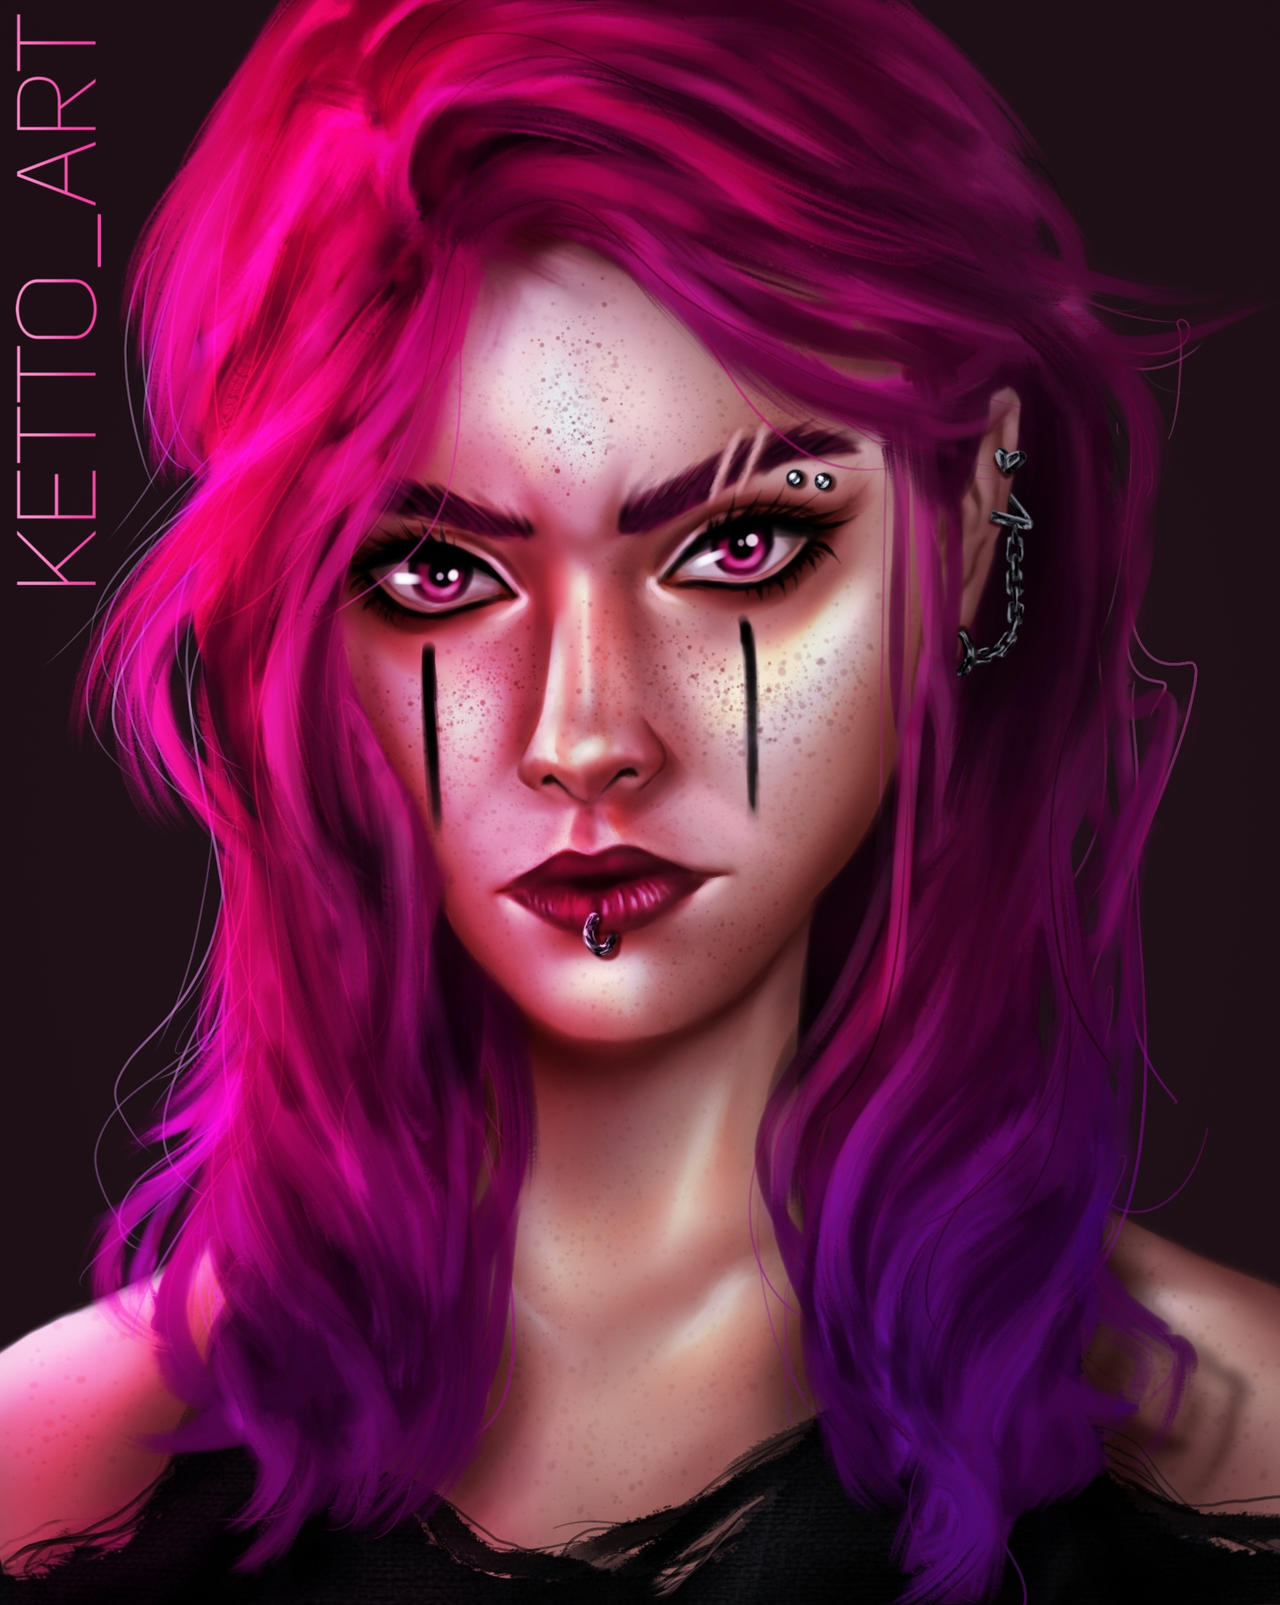 Cyberpunk Girl by ketto-art on DeviantArt